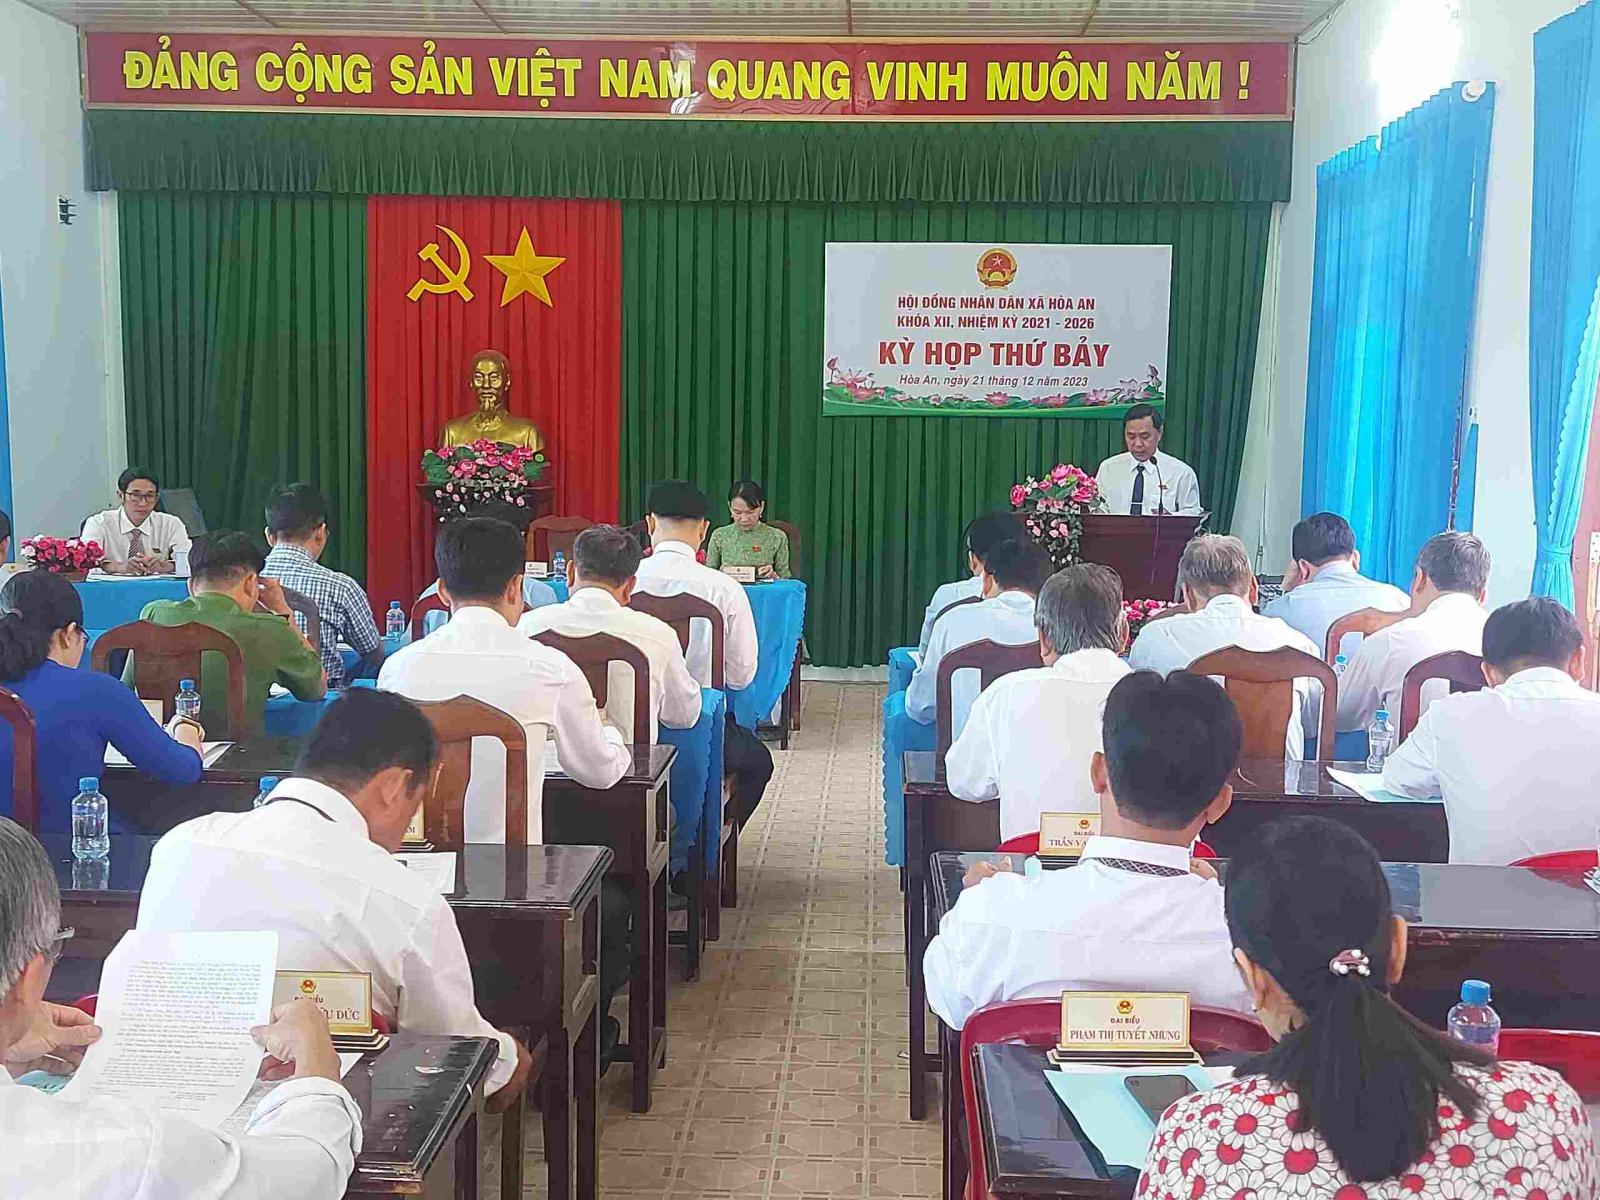 HĐND xã Hòa An tổ chức kỳ họp thứ bảy HĐND xã  khoá XII, nhiệm kỳ 2021-2026